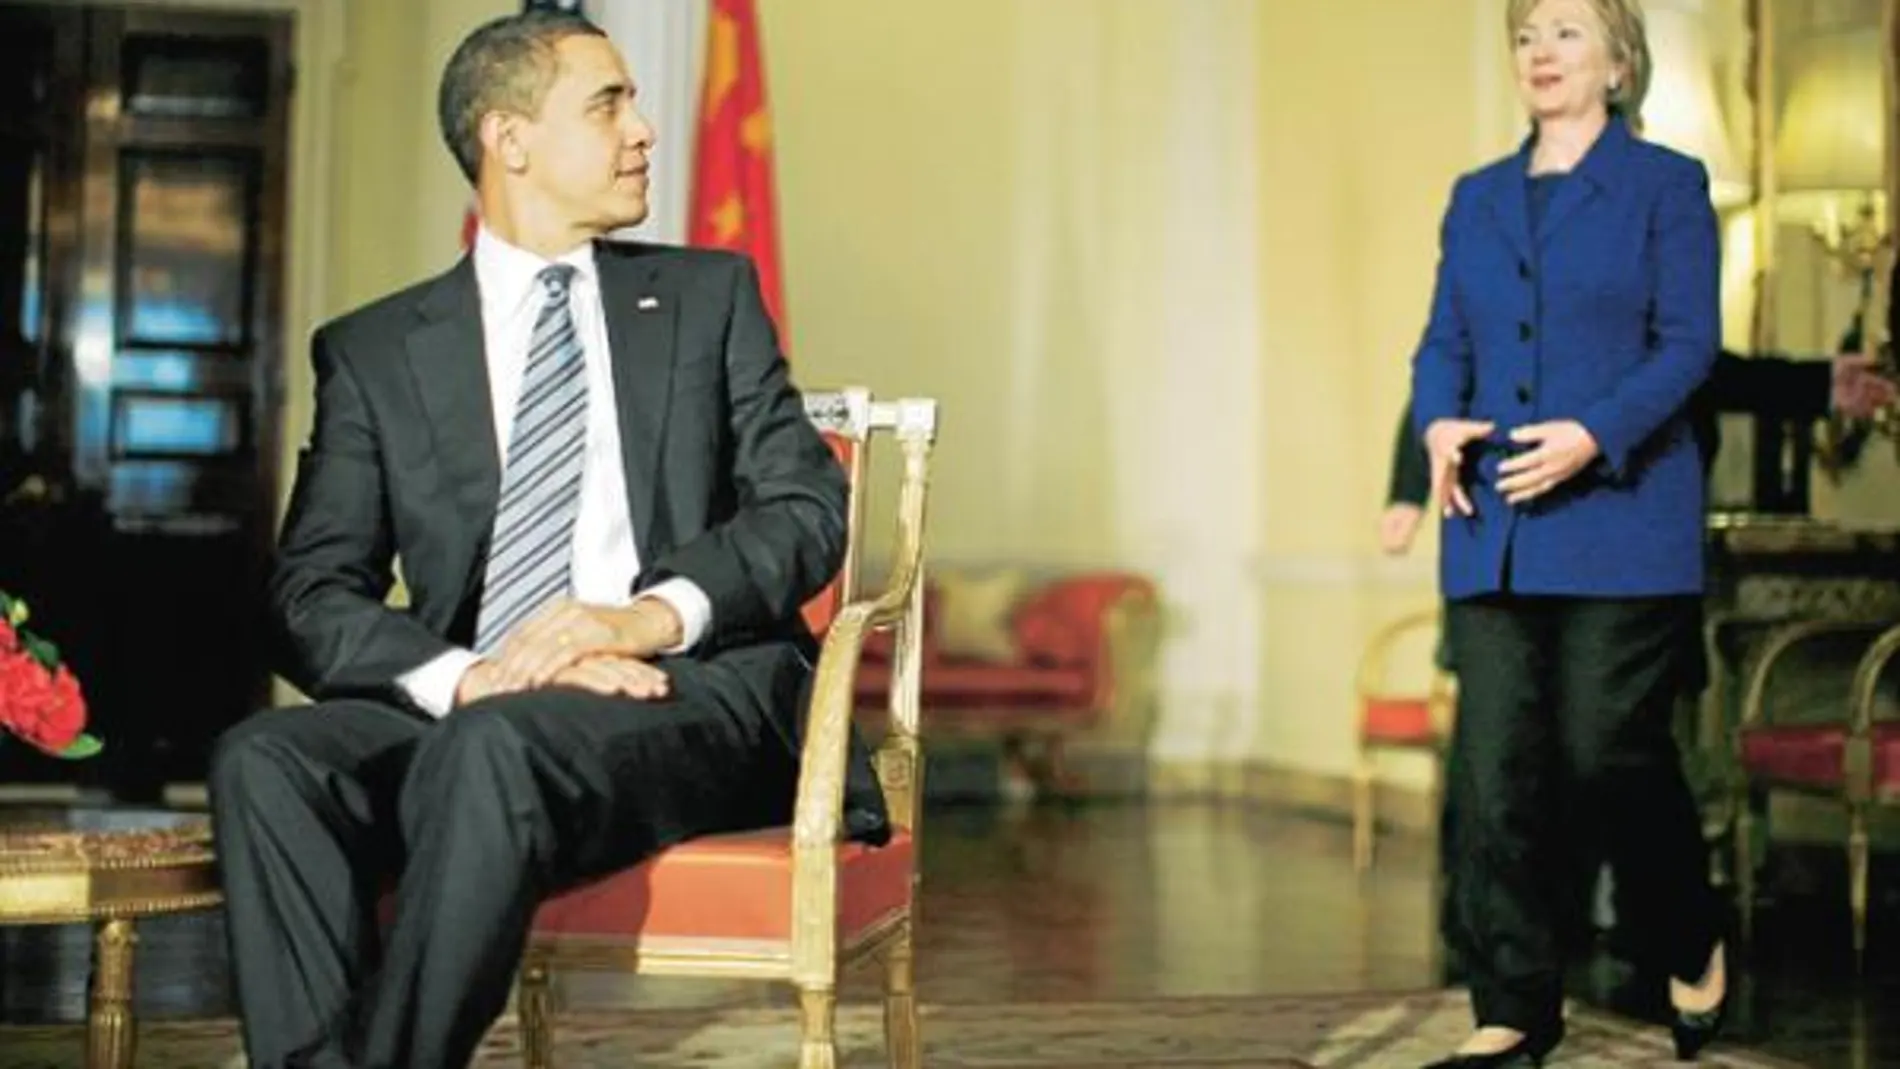 Obama y Clinton, antes de empezar su rosario de encuentros bilaterales